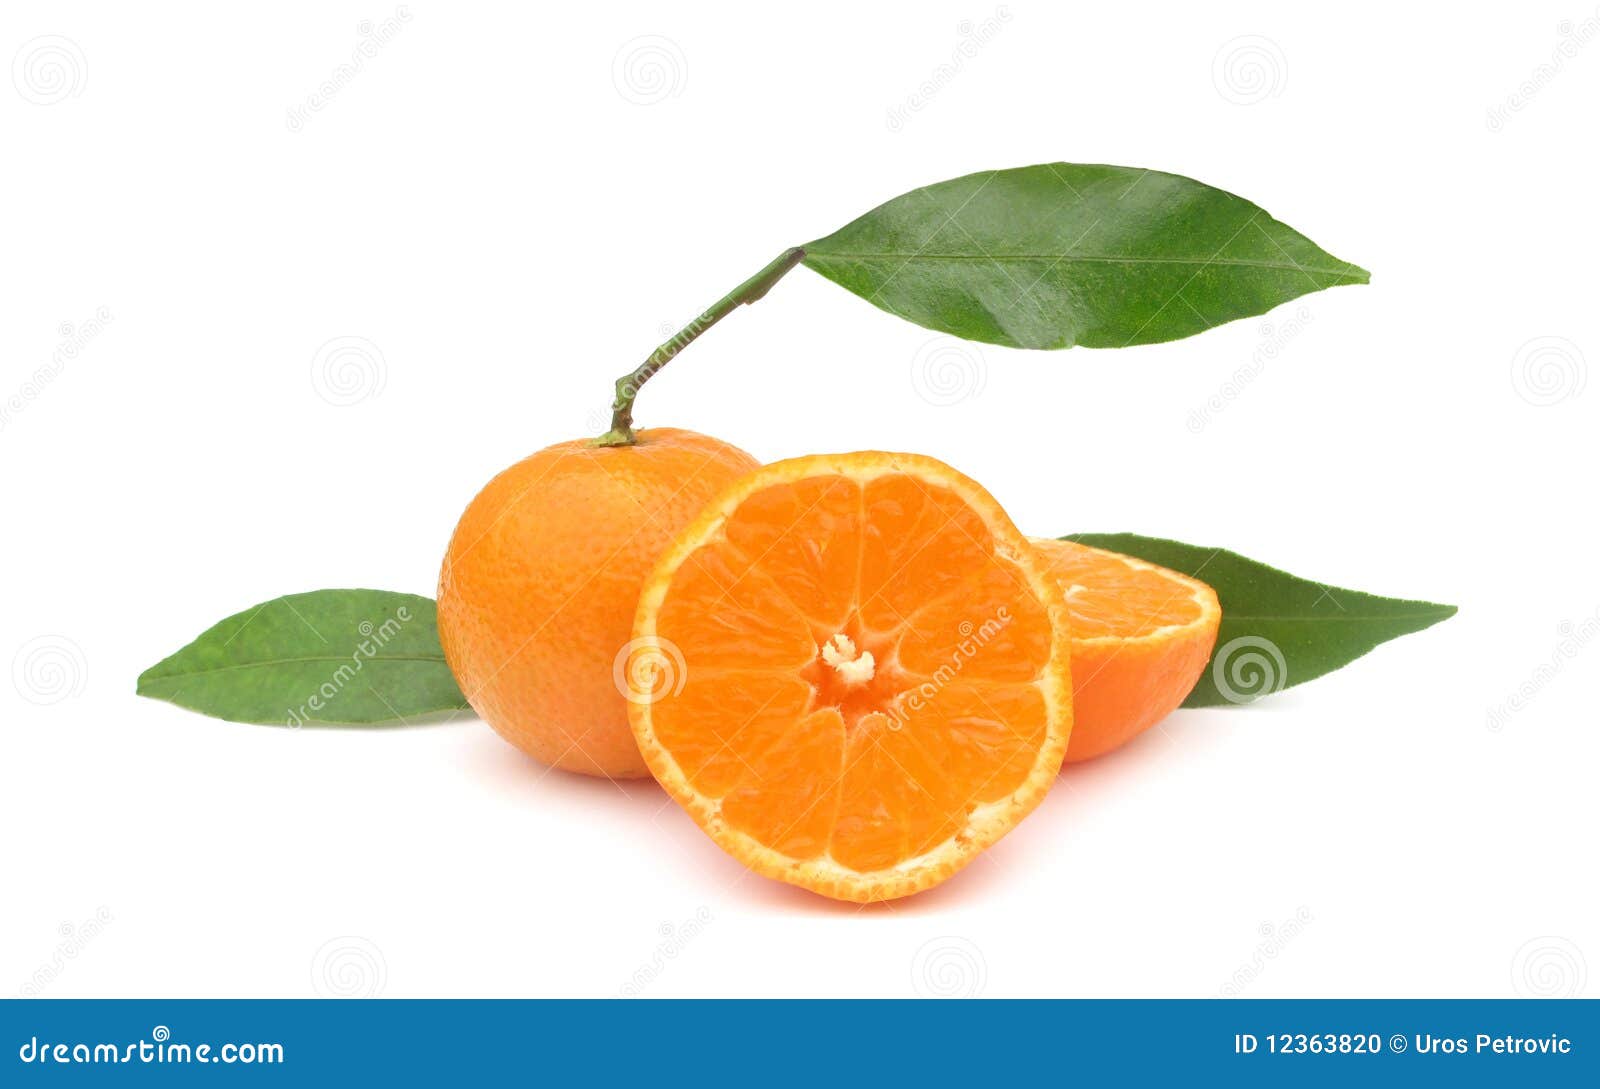 clementines mandarin oranges perfect